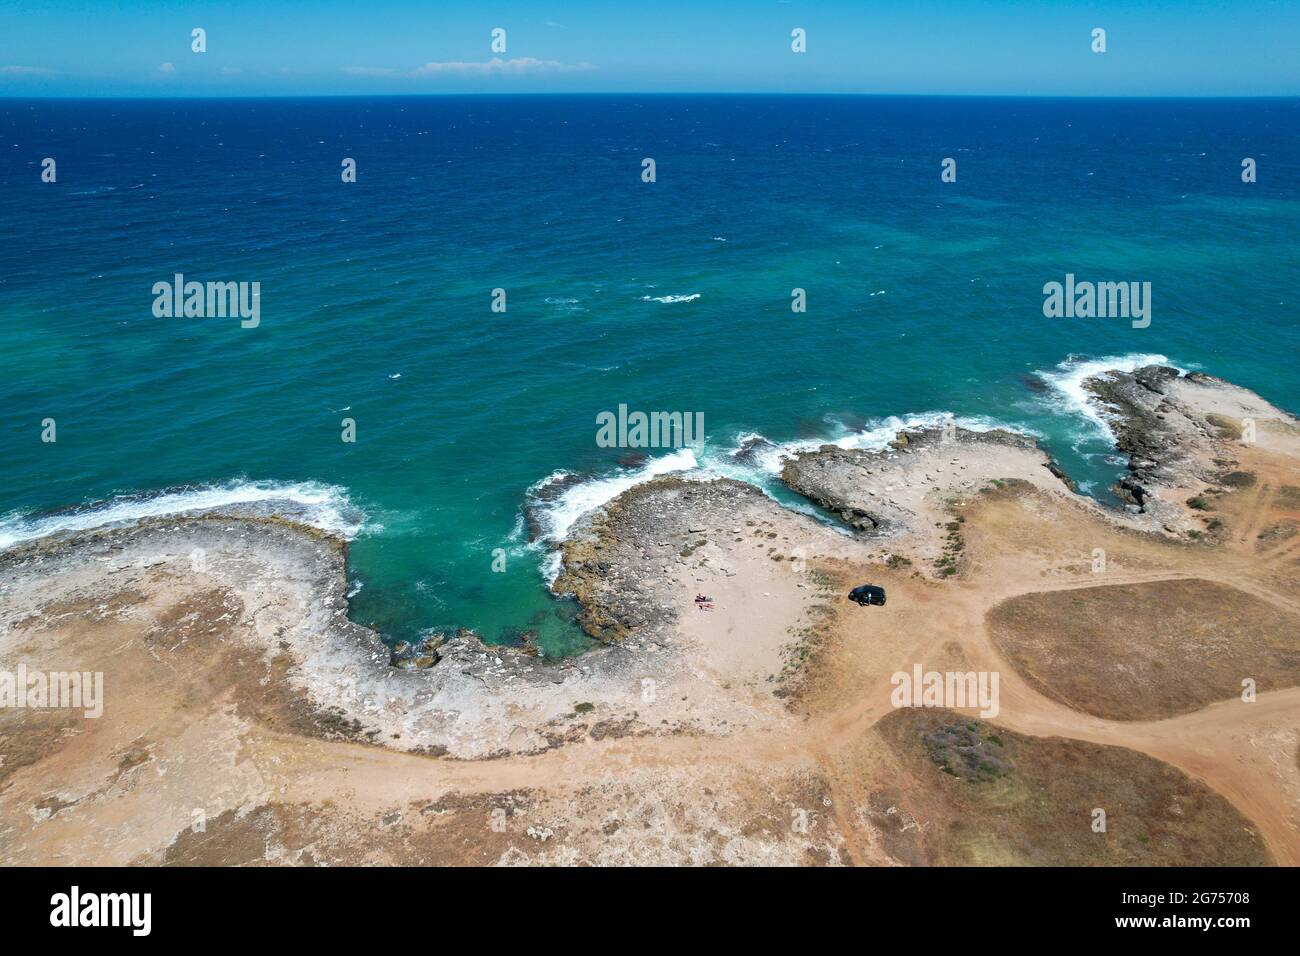 Costa Merlata, spiagge vicino Ostuni fotografate con drone dall'alto. Offre uno dei tratti di costa più belli della Puglia e dell'Italia Foto Stock